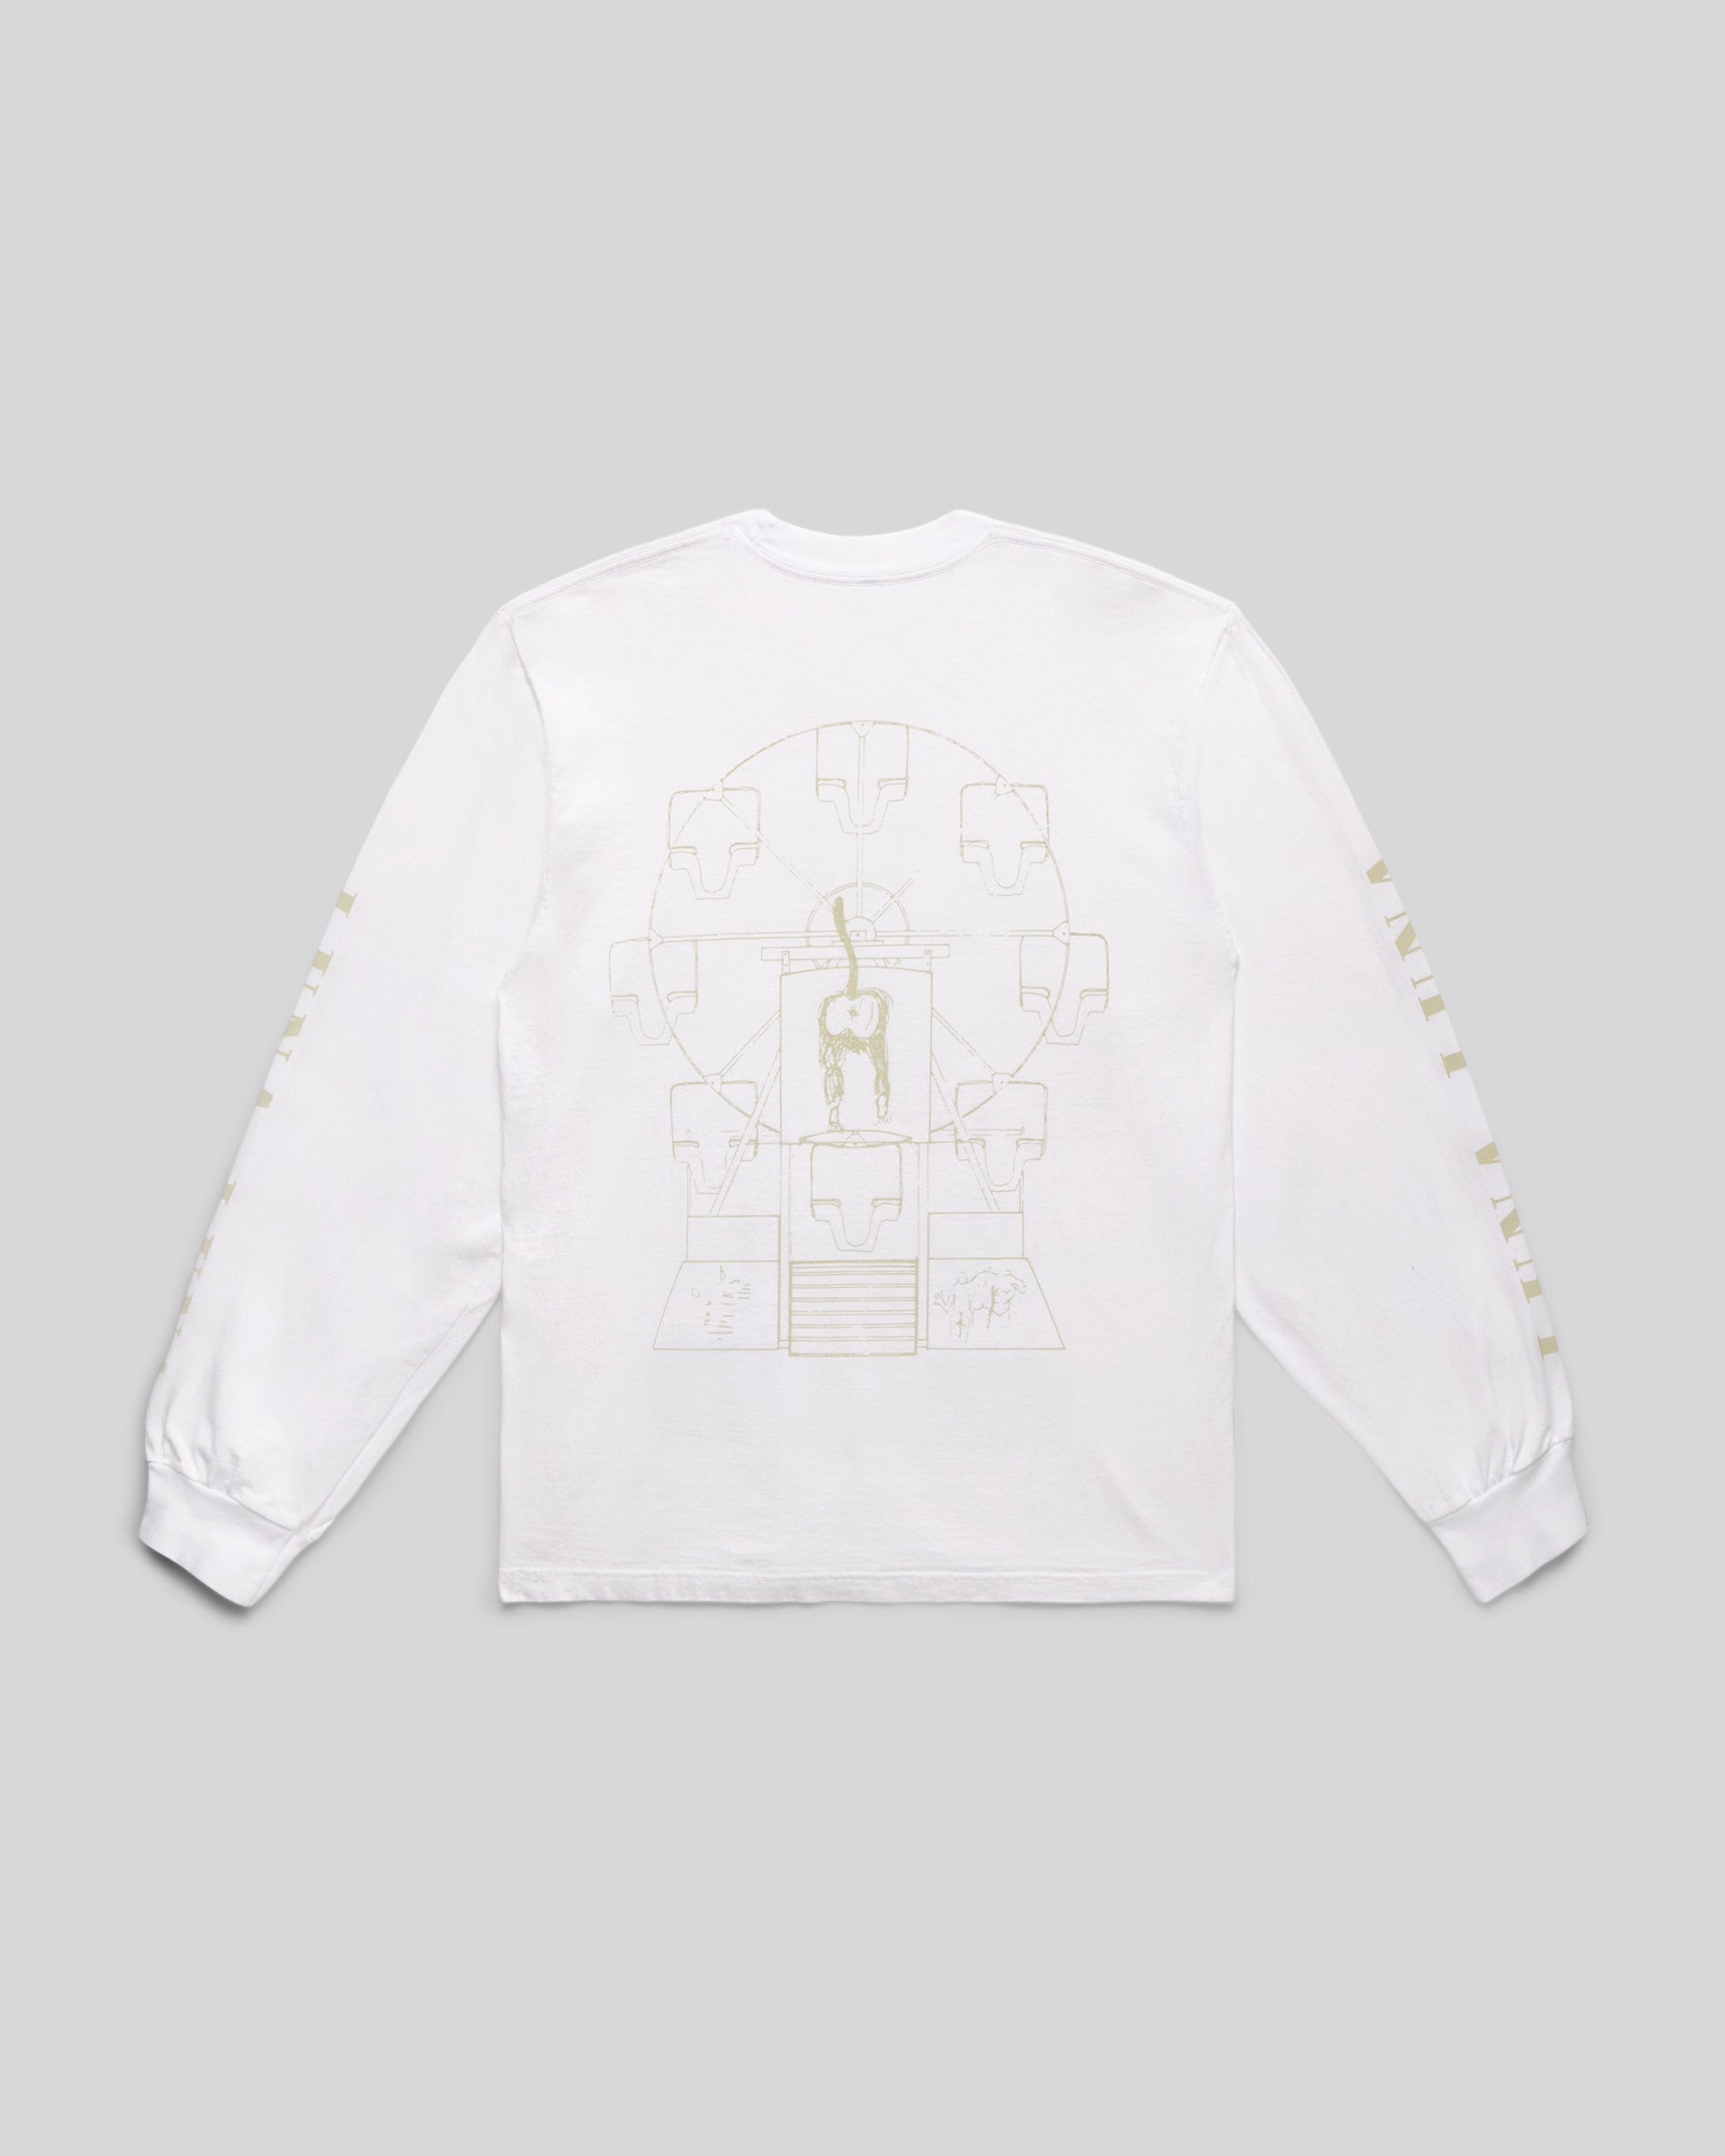 Basquiat Ferris Wheel Blueprint Long Sleeve T-Shirt